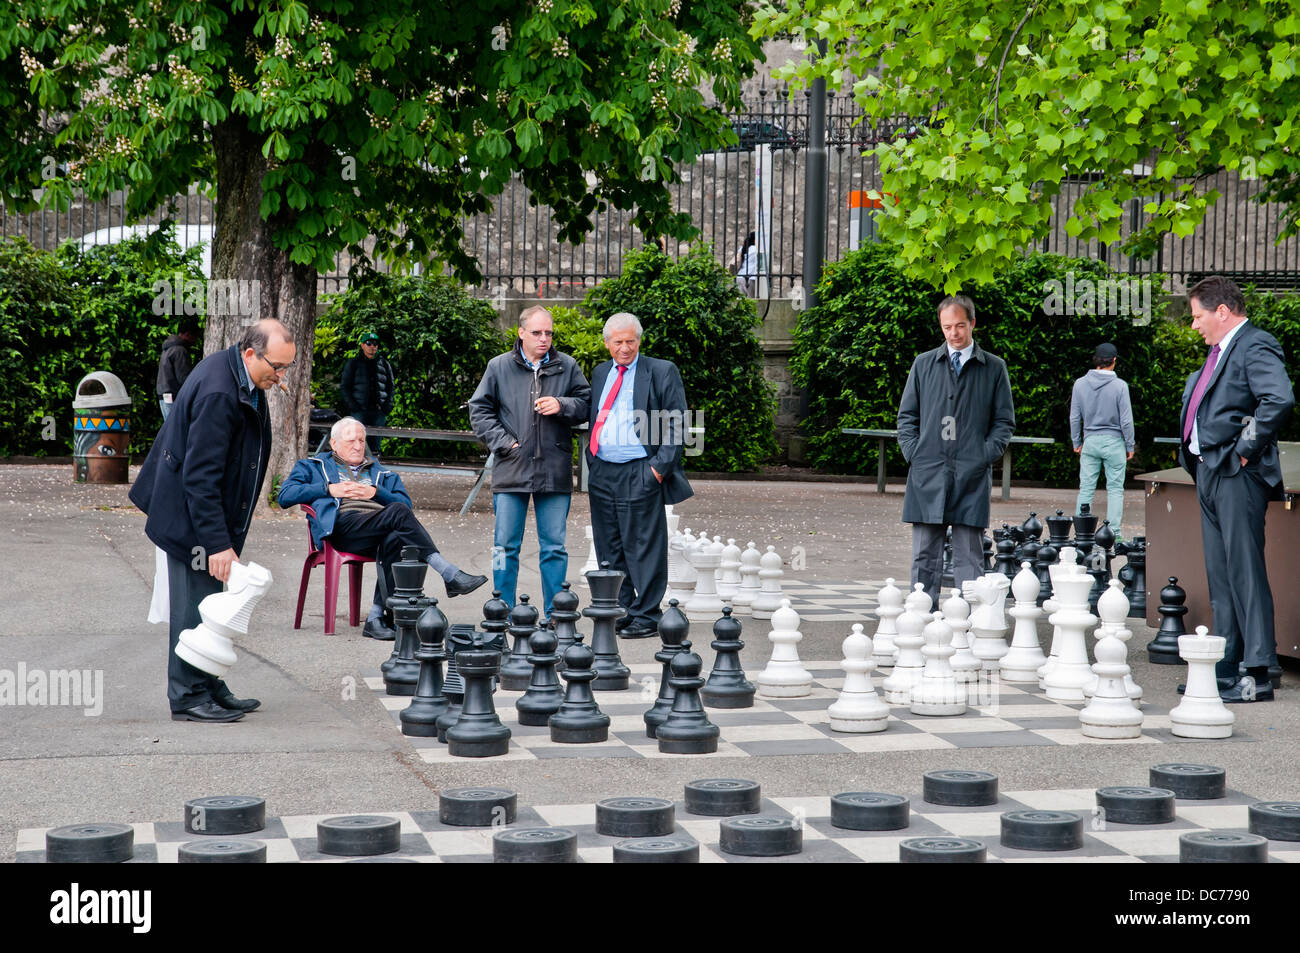 Genève les gens jouer aux échecs dans le parc,Genève, Suisse, Europe Banque D'Images